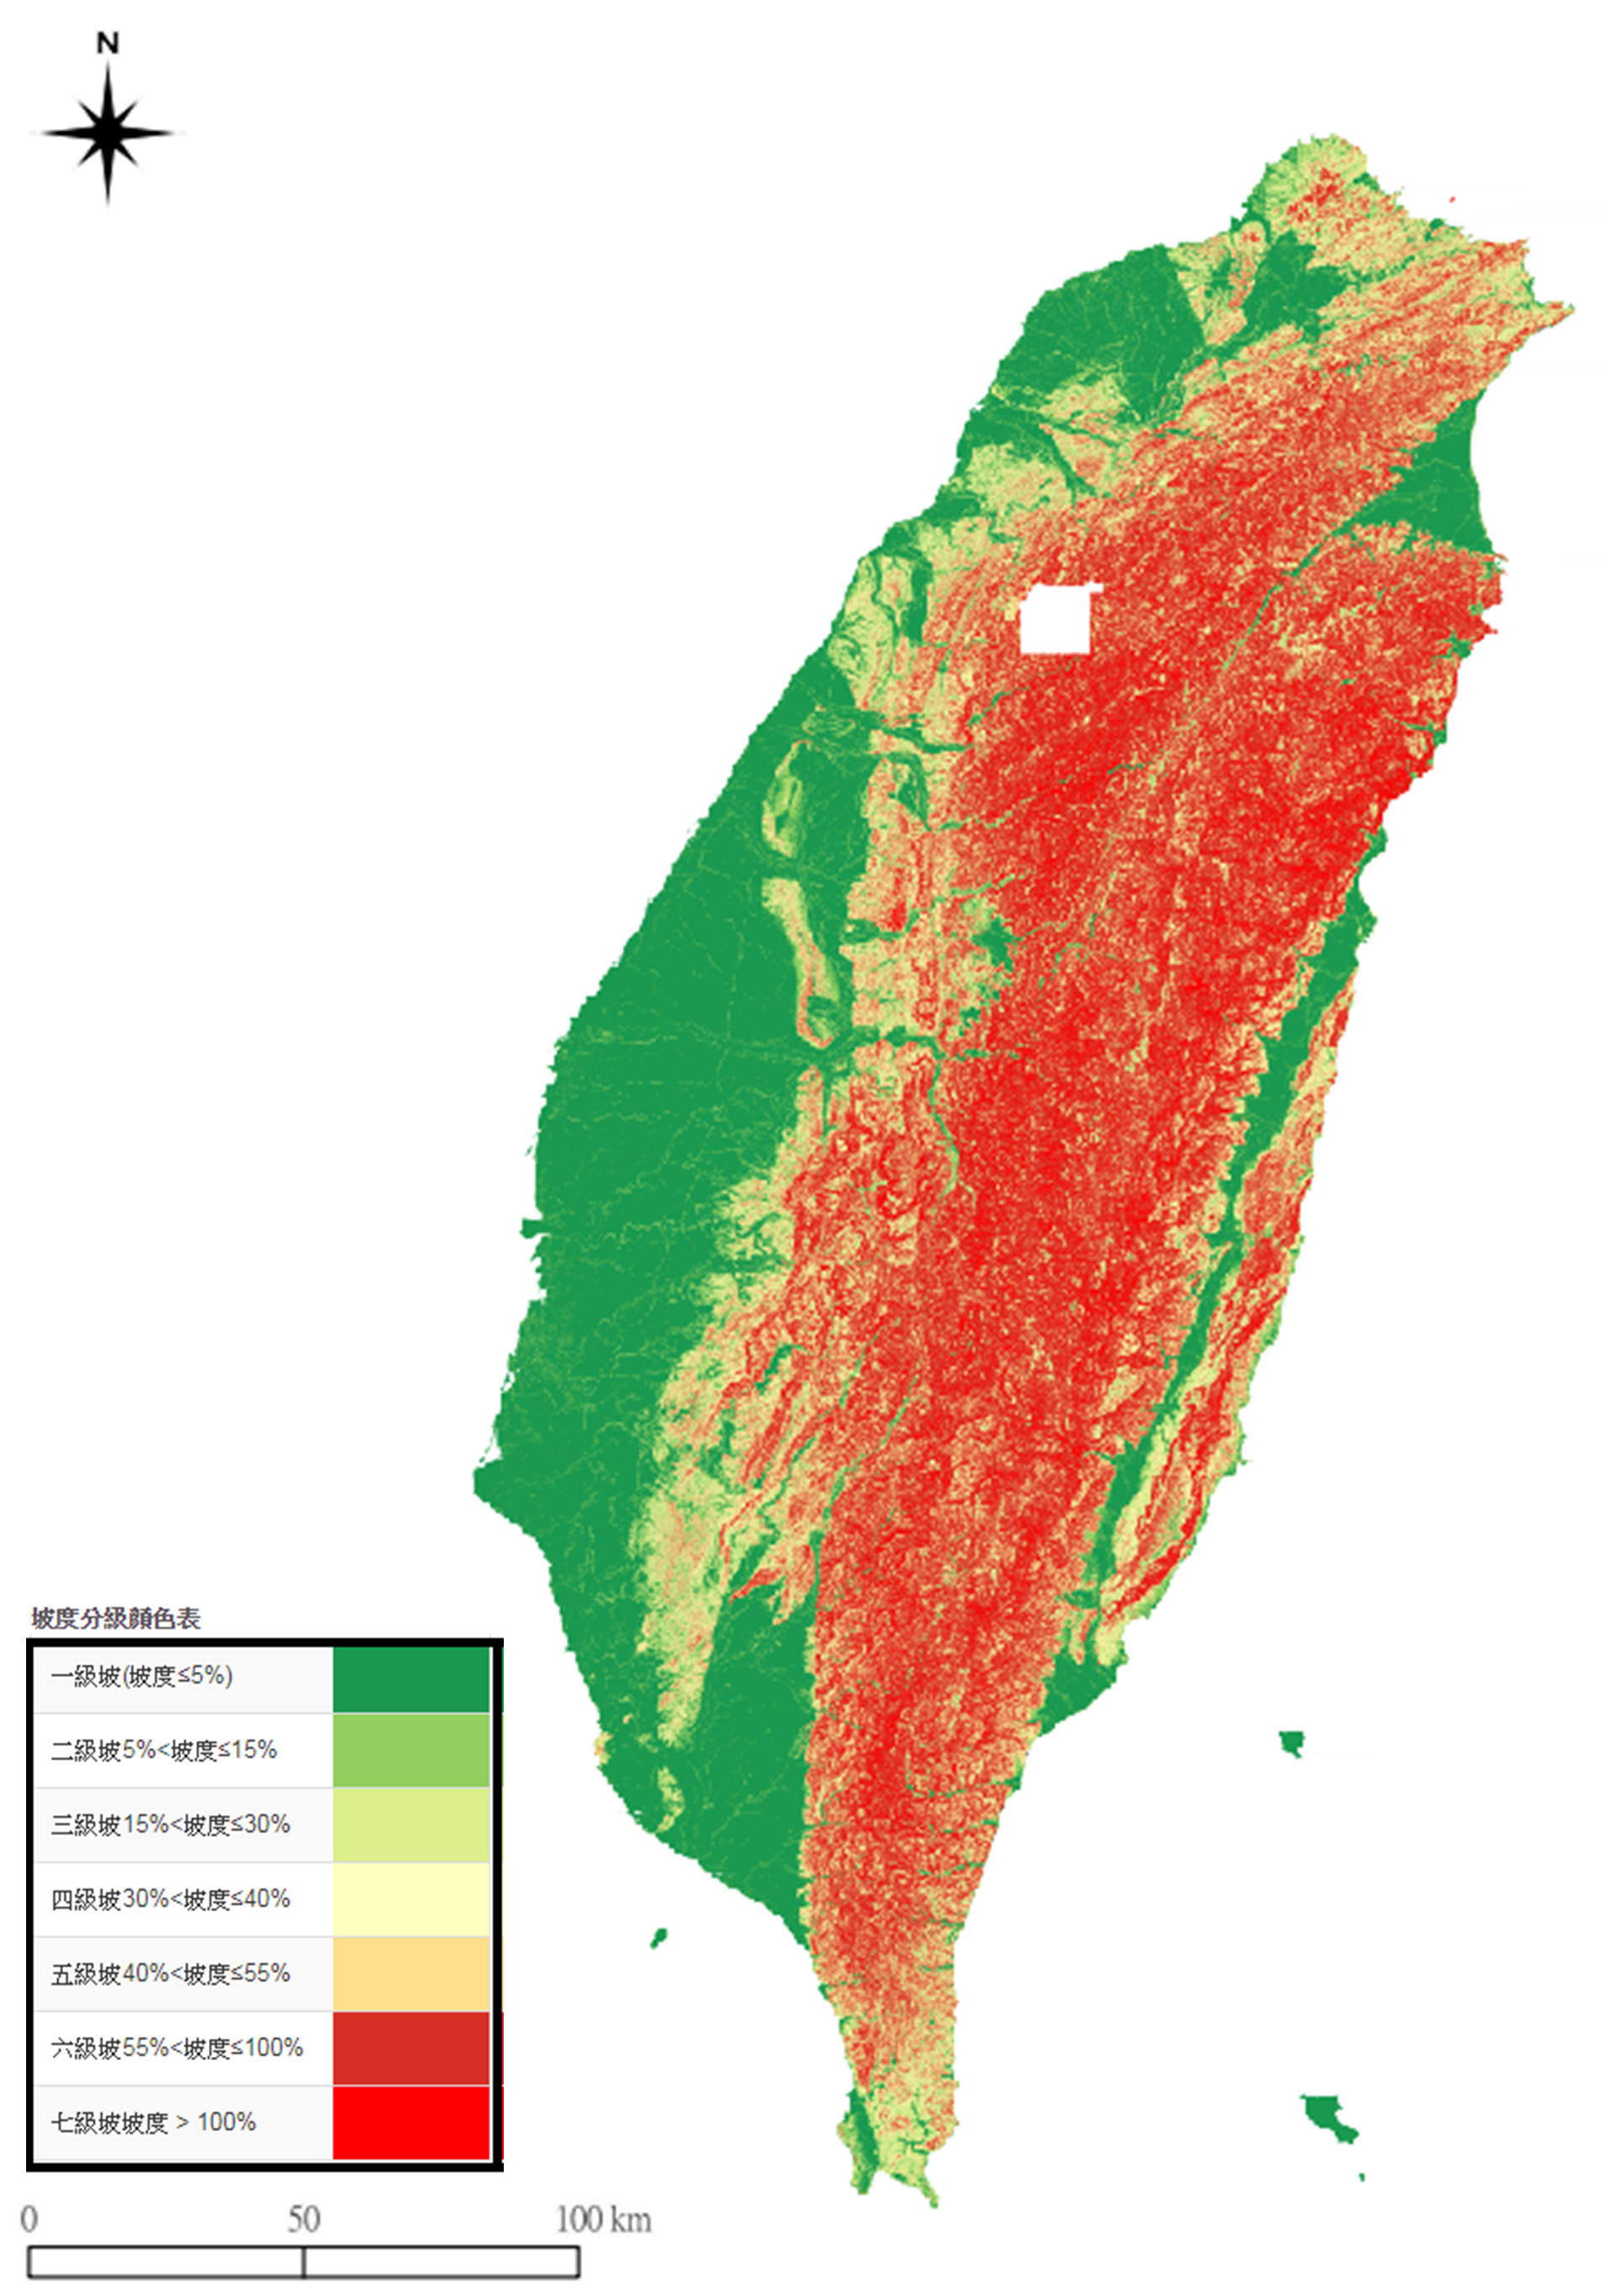 圖2、臺灣的坡度分級圖，資料來源：國土測繪圖資服務雲